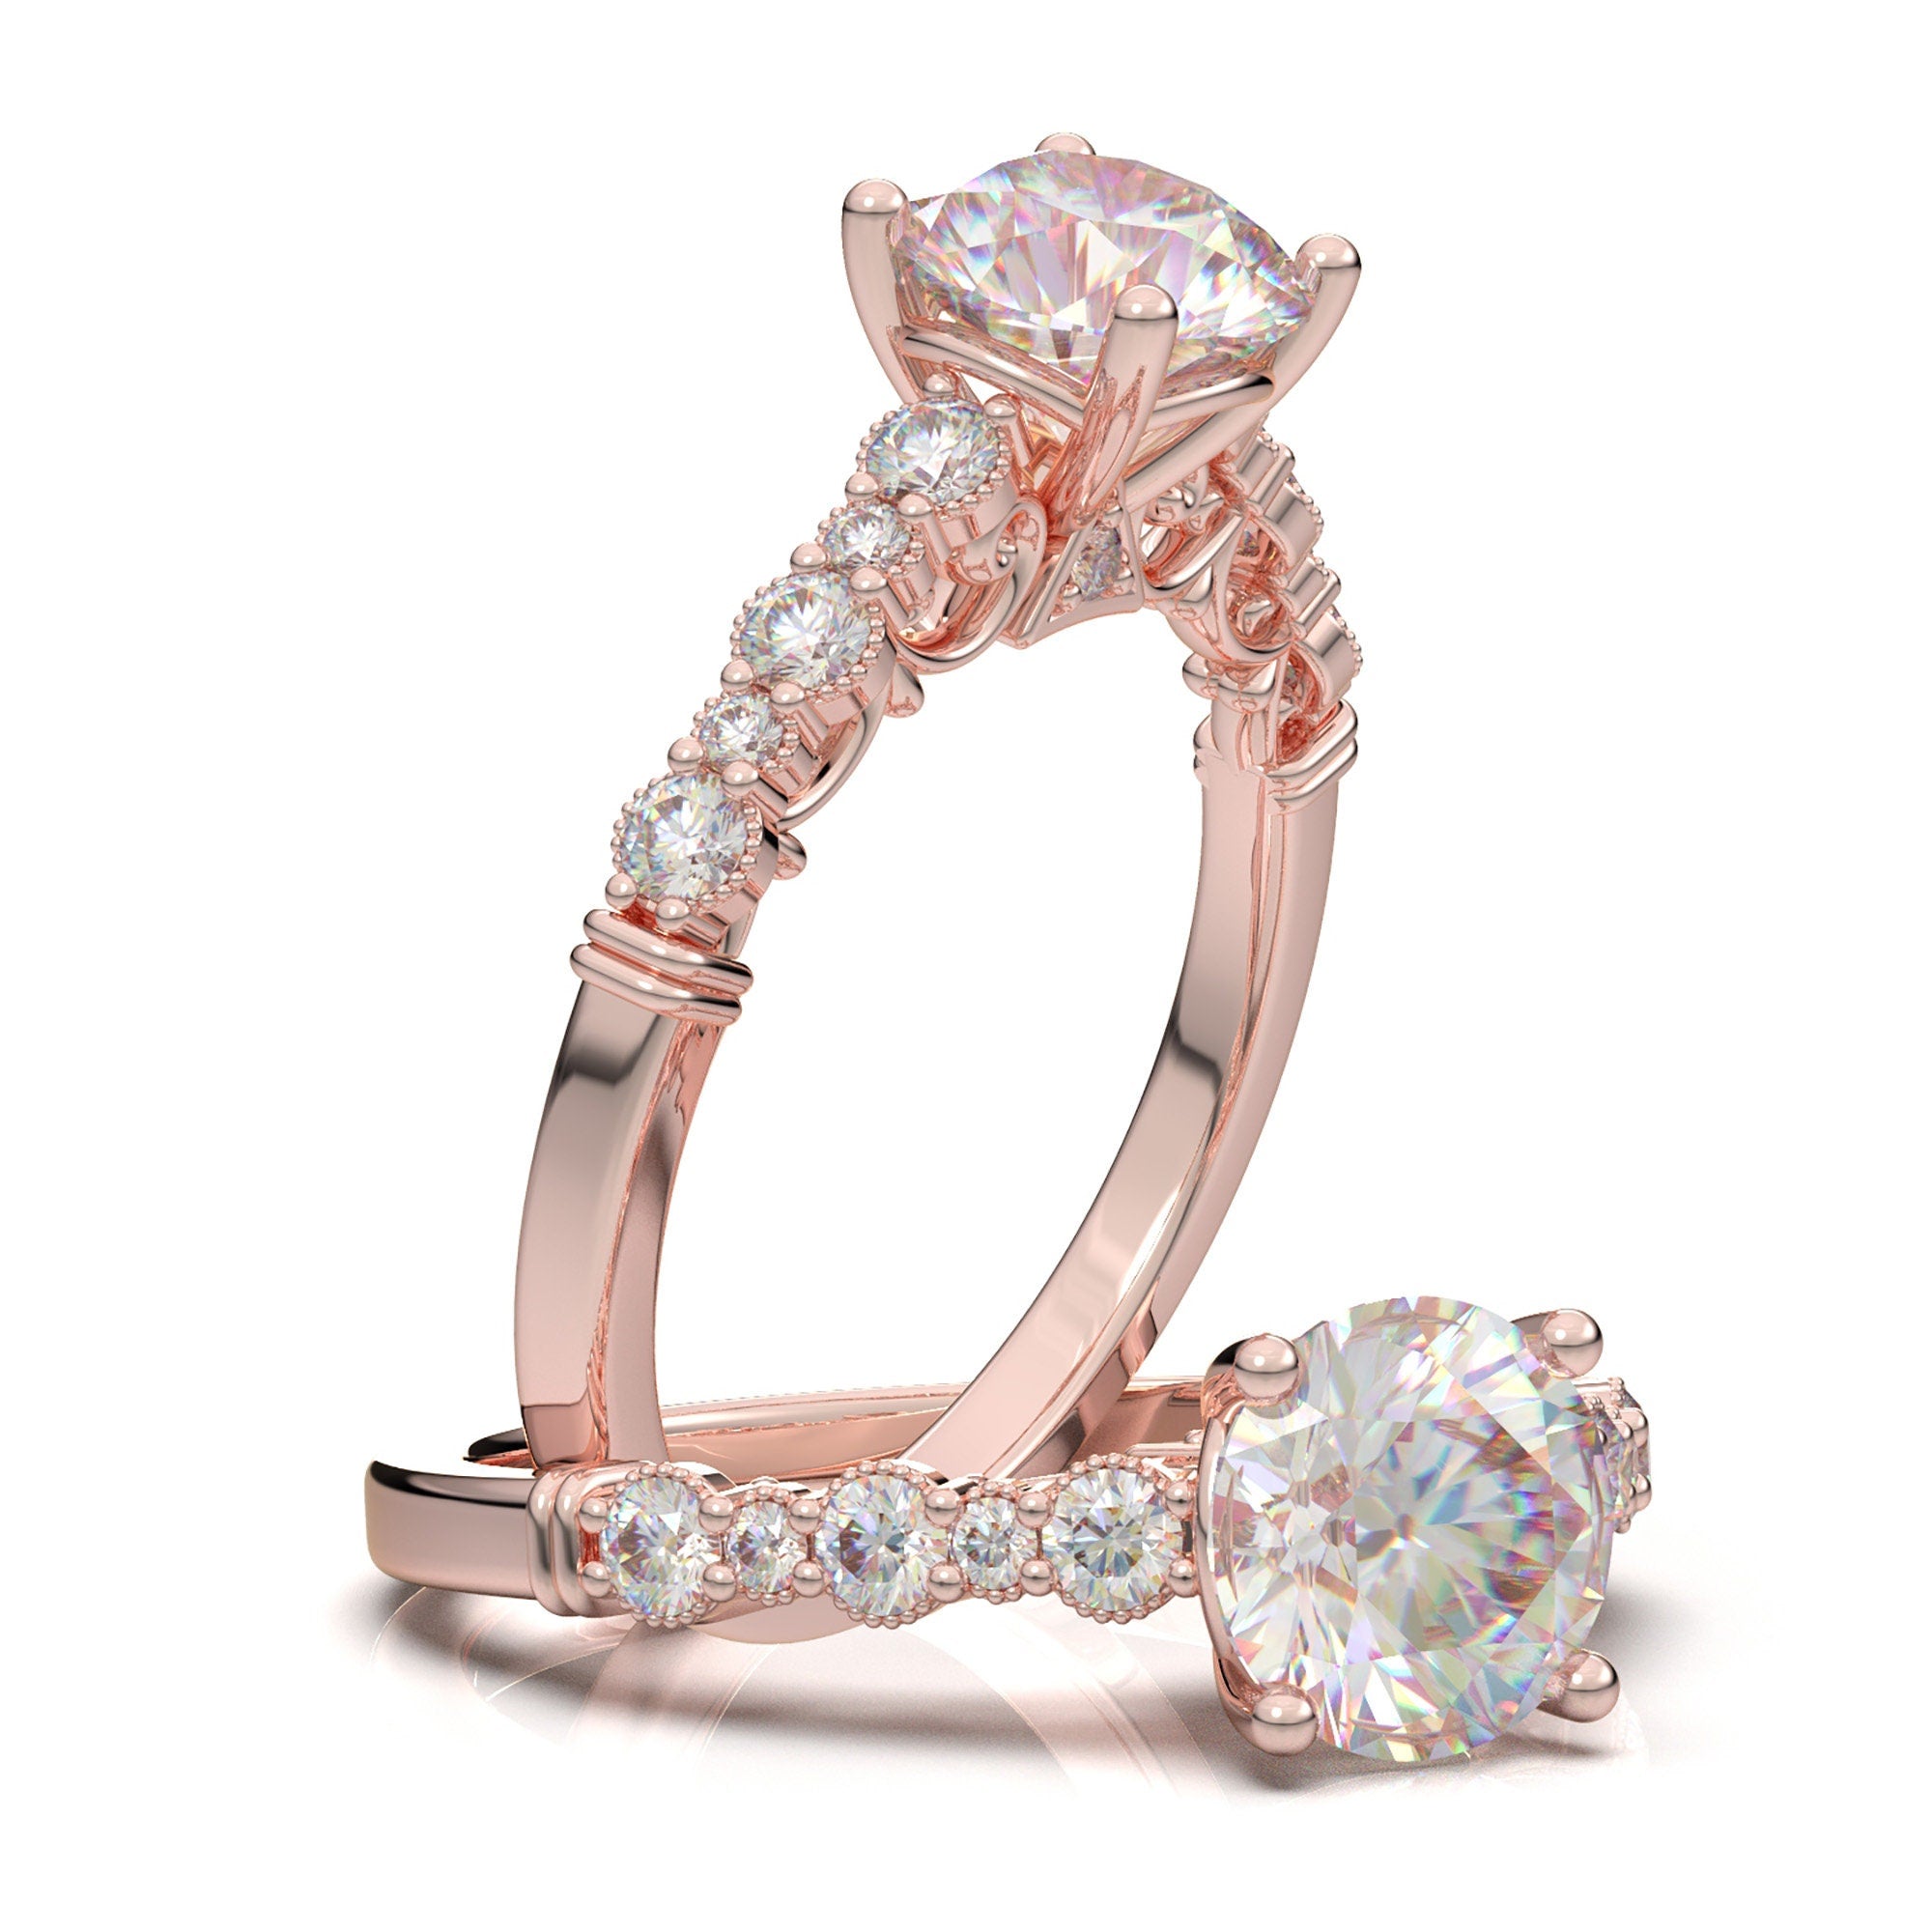 14K Solid White Gold Diamond Ring, Moissanite Engagement Ring, Promise